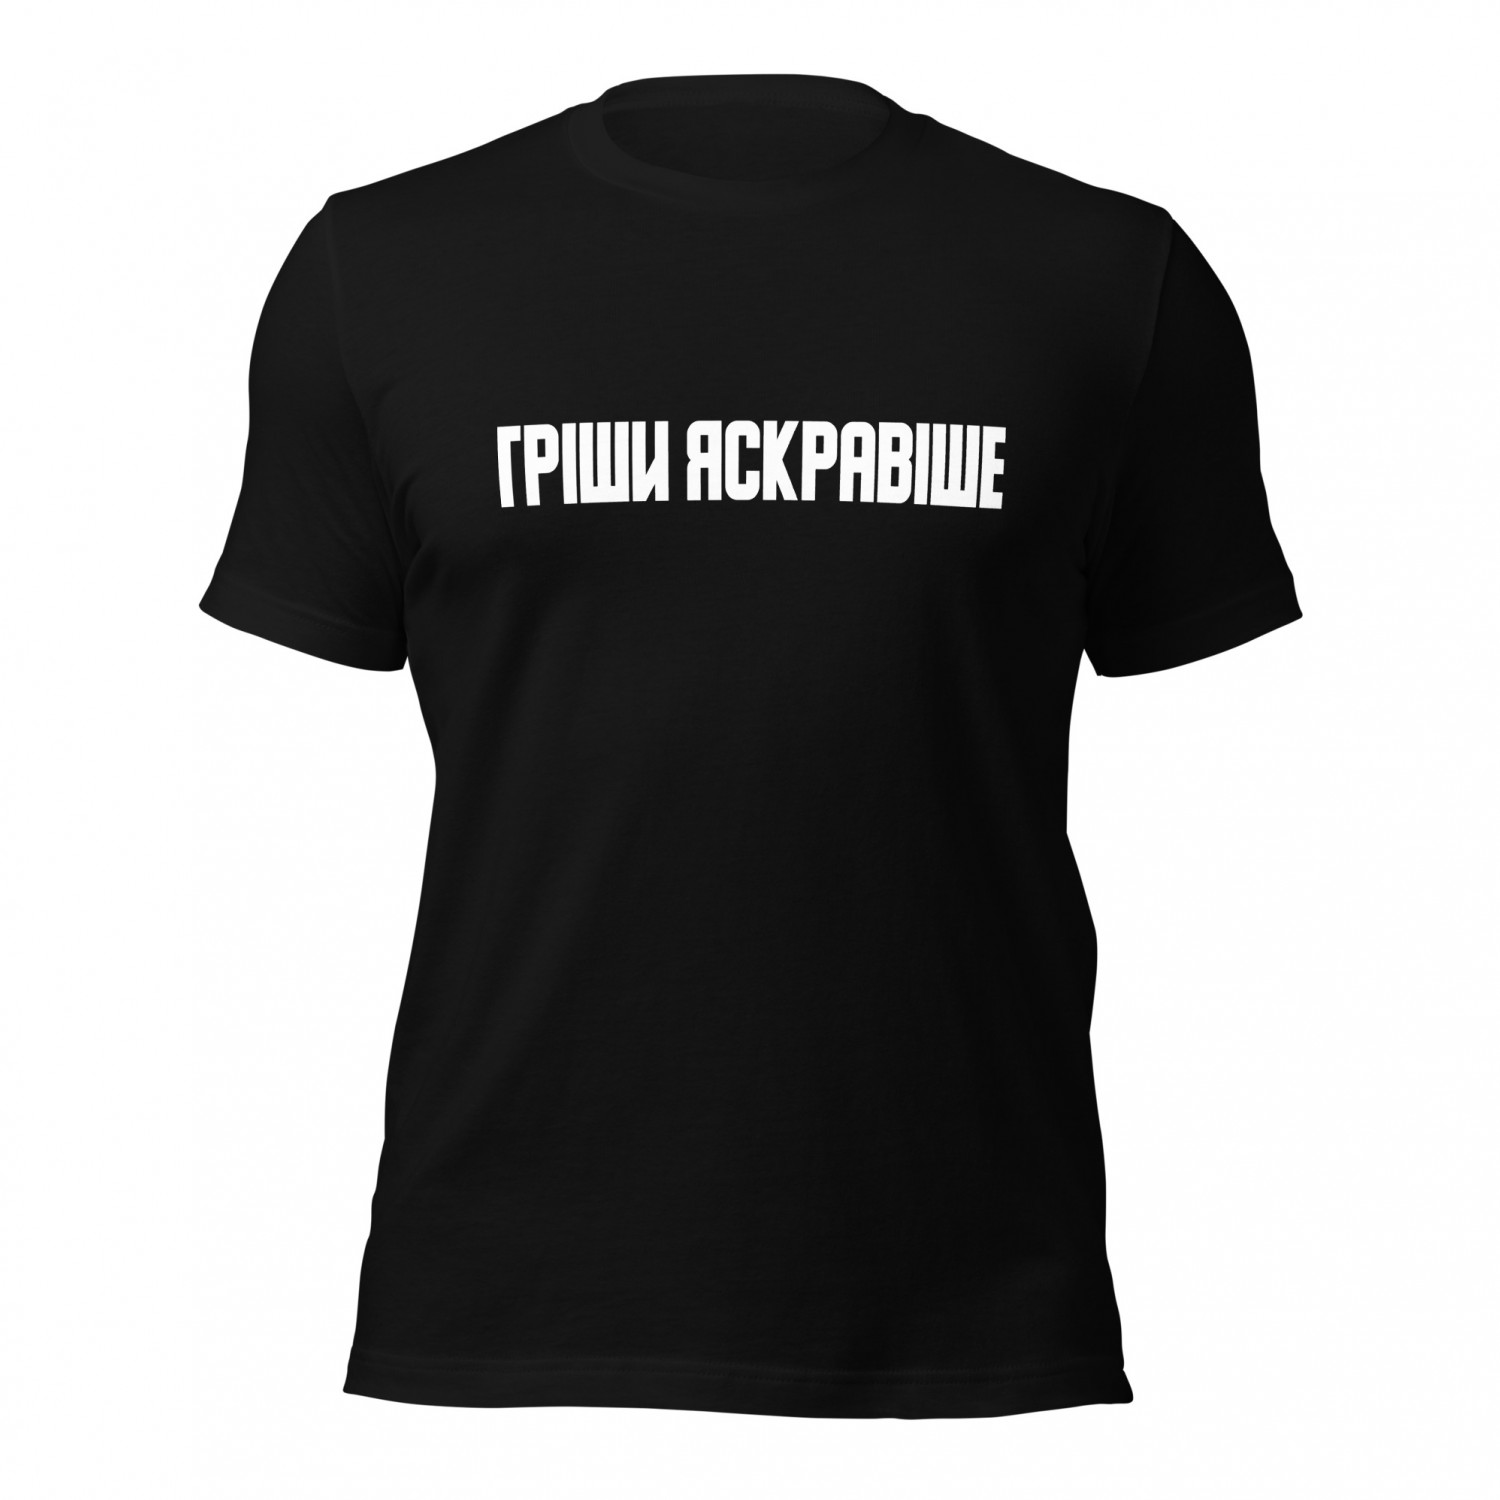 Kup koszulkę Grisha Yarche